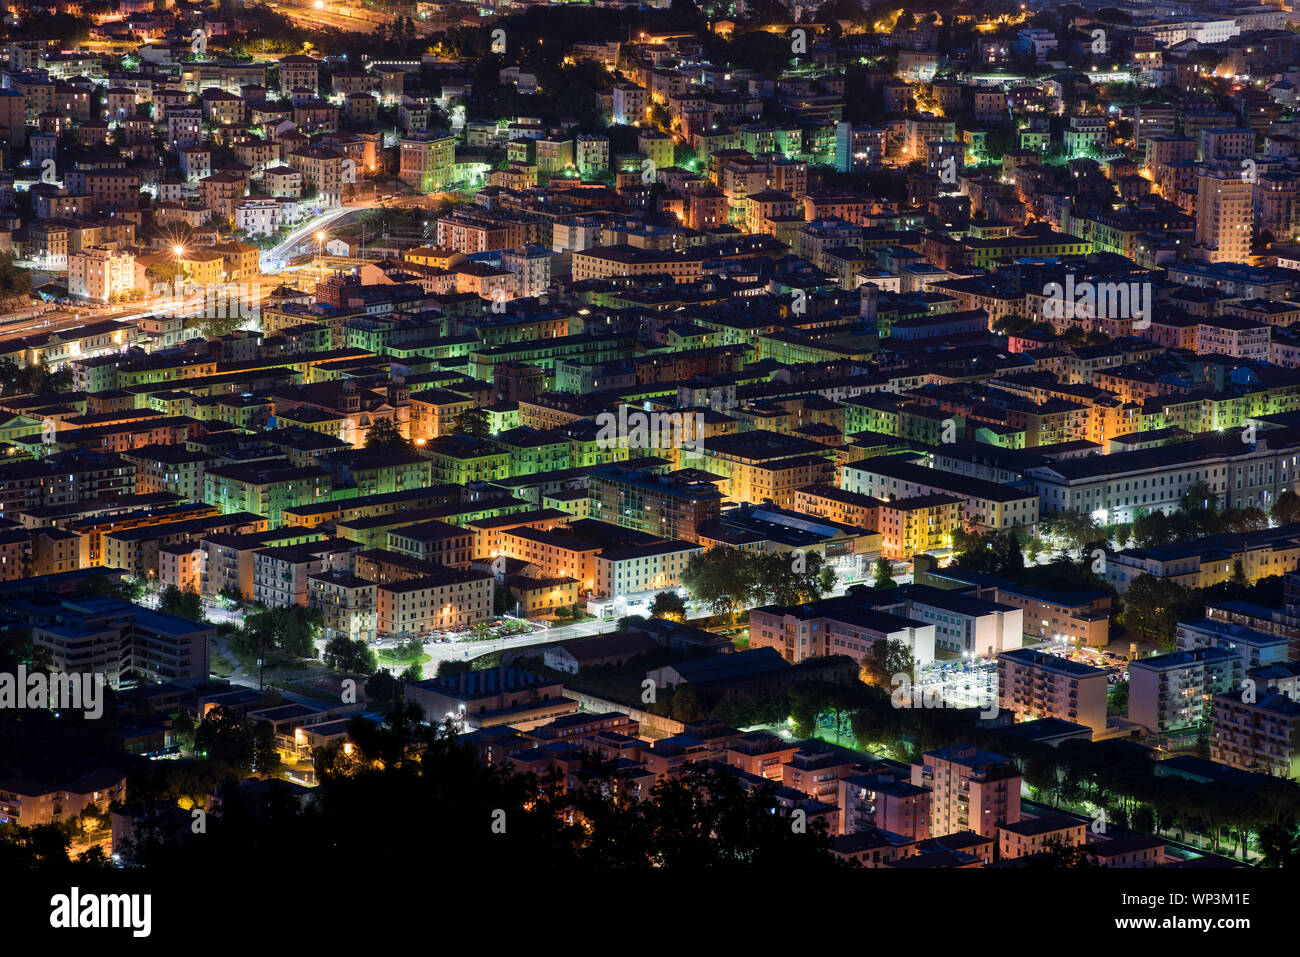 Erhöhte Dach Nacht Blick auf La Spezia, Italien mit bunt leuchtenden Lampen in den Gebäuden in einem Reise- und Tourismus-Konzept Stockfoto